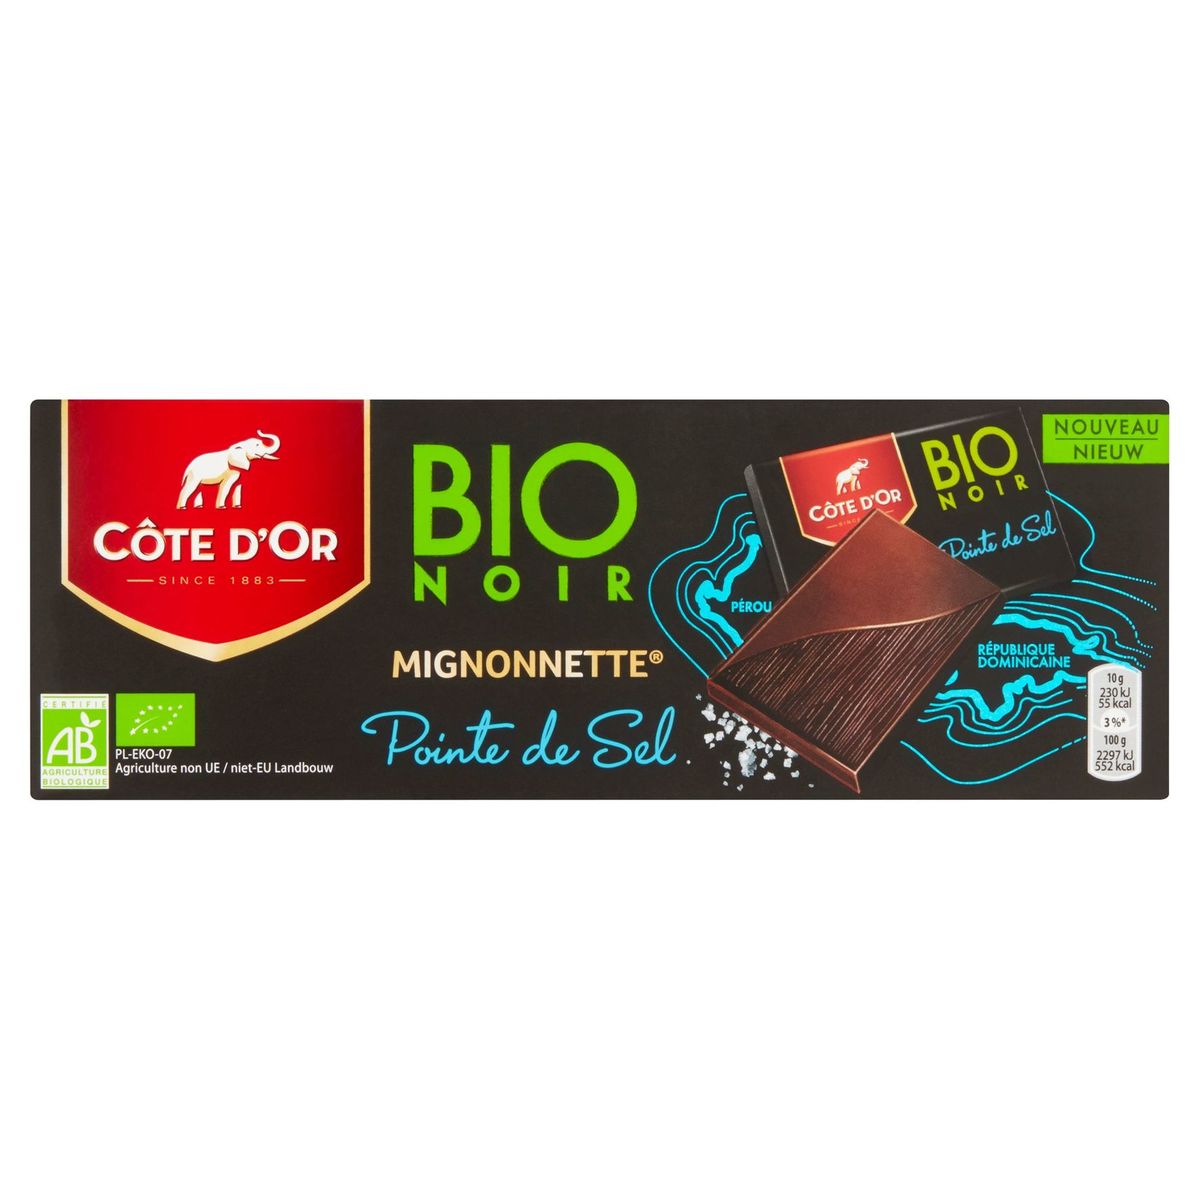 Côte d'Or Bio Noir Mignonnette Pointe de Sel 180 g